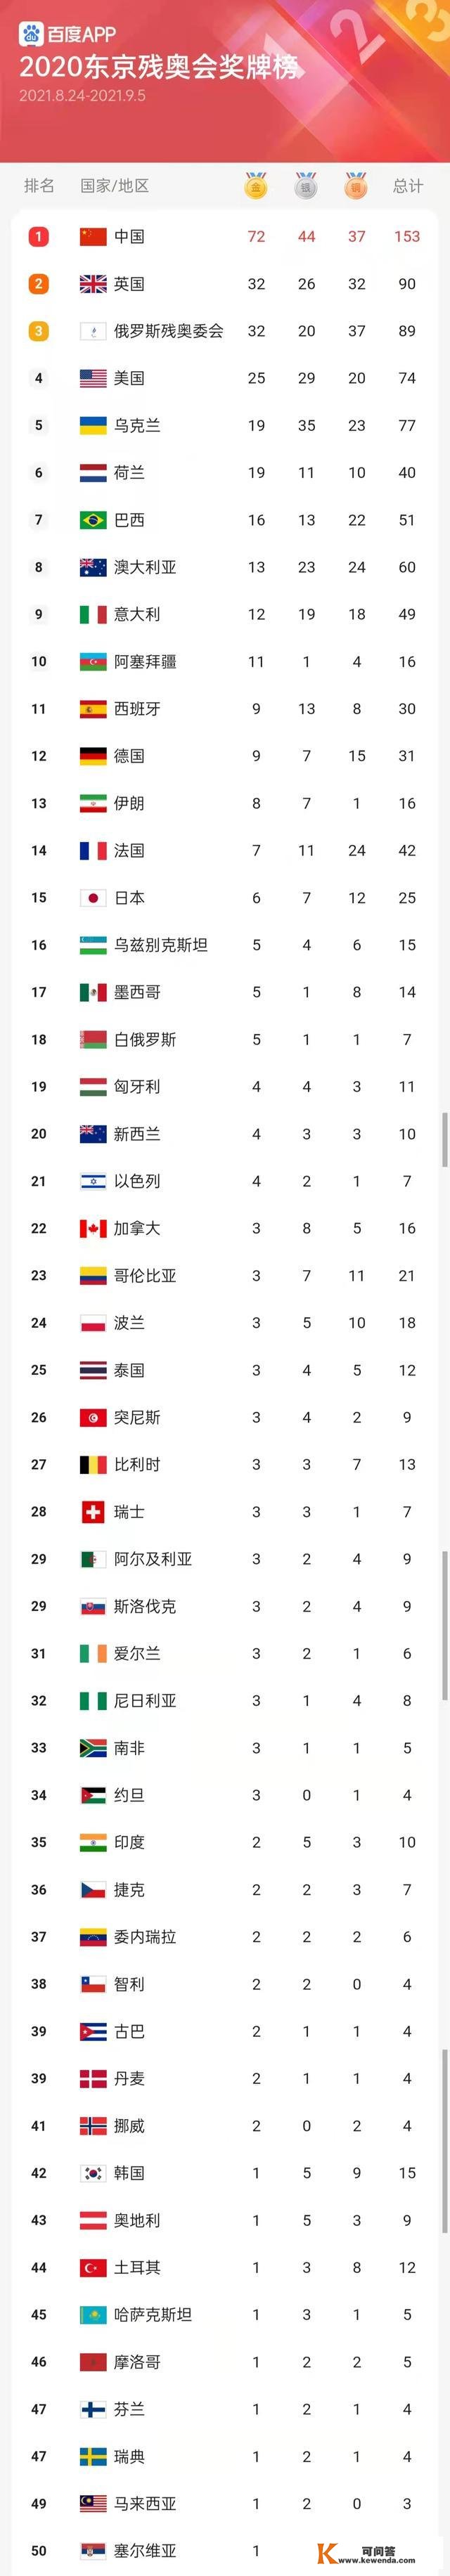 残奥会实时奖牌榜：中国72金44银37铜第一，英国32金26银32铜第二